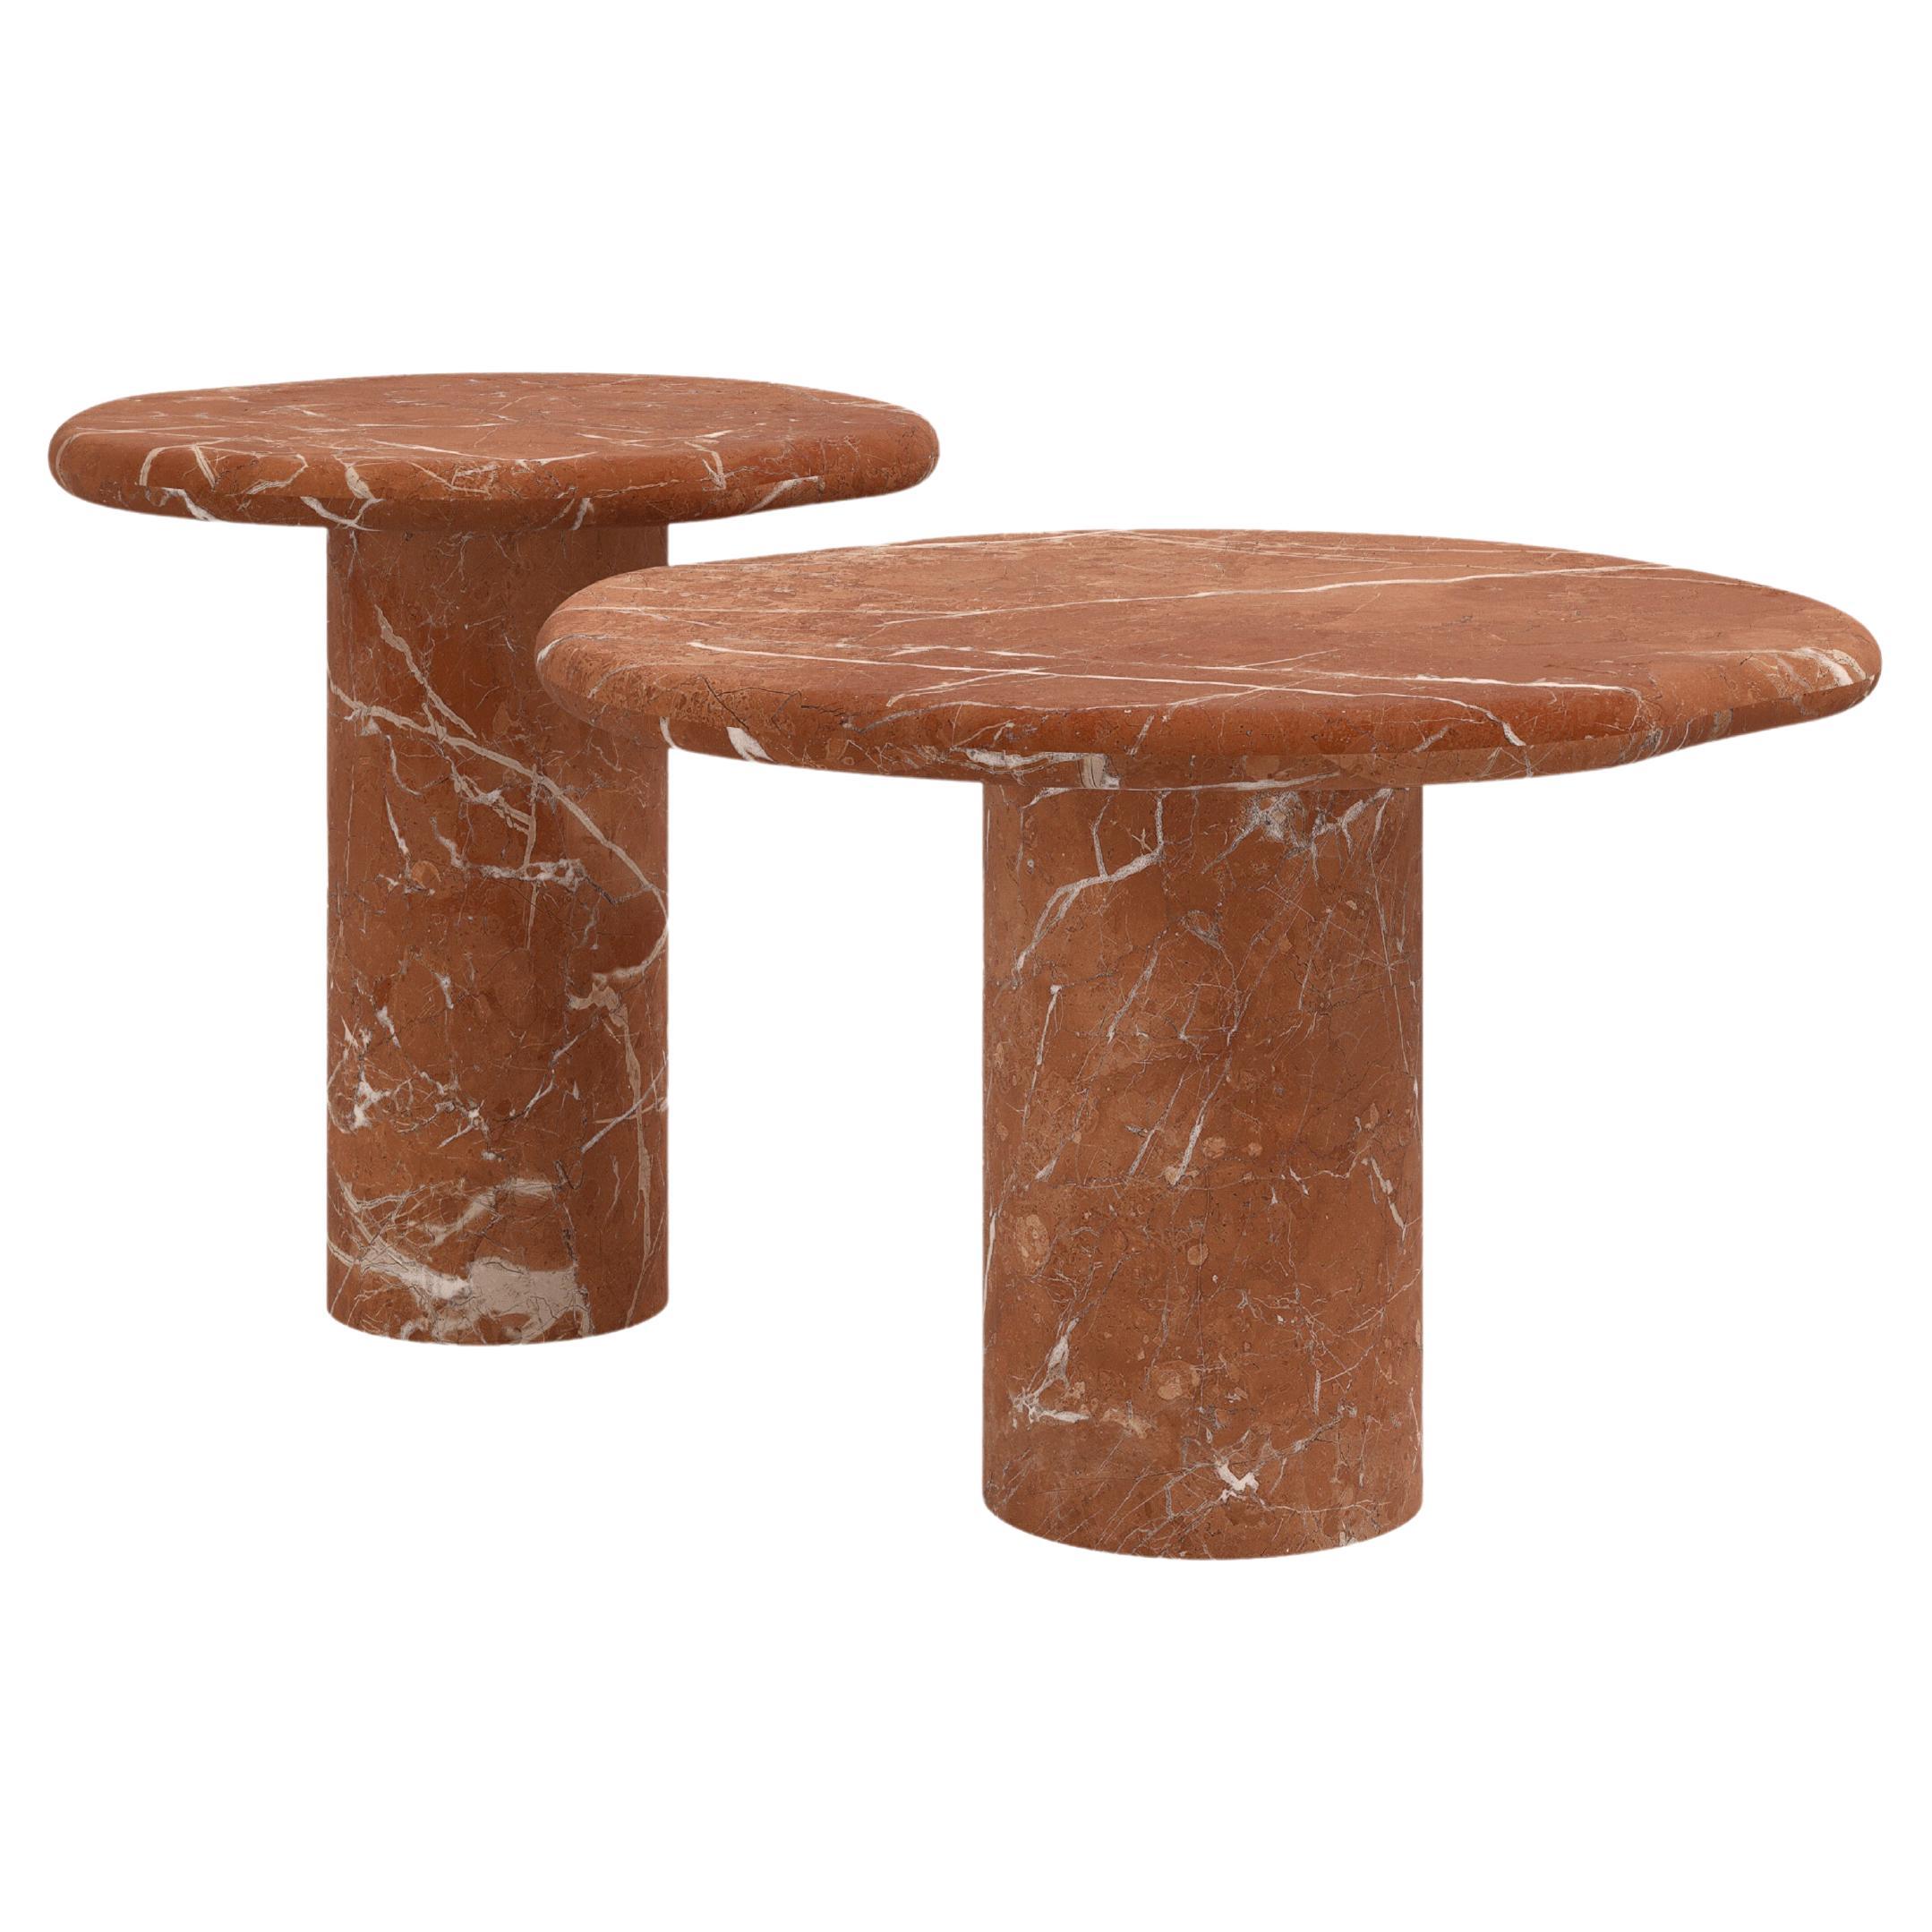 FORM(LA) Lago Round Side Table 24”L x 24”W x 16”H Rojo Alicante Marble For Sale